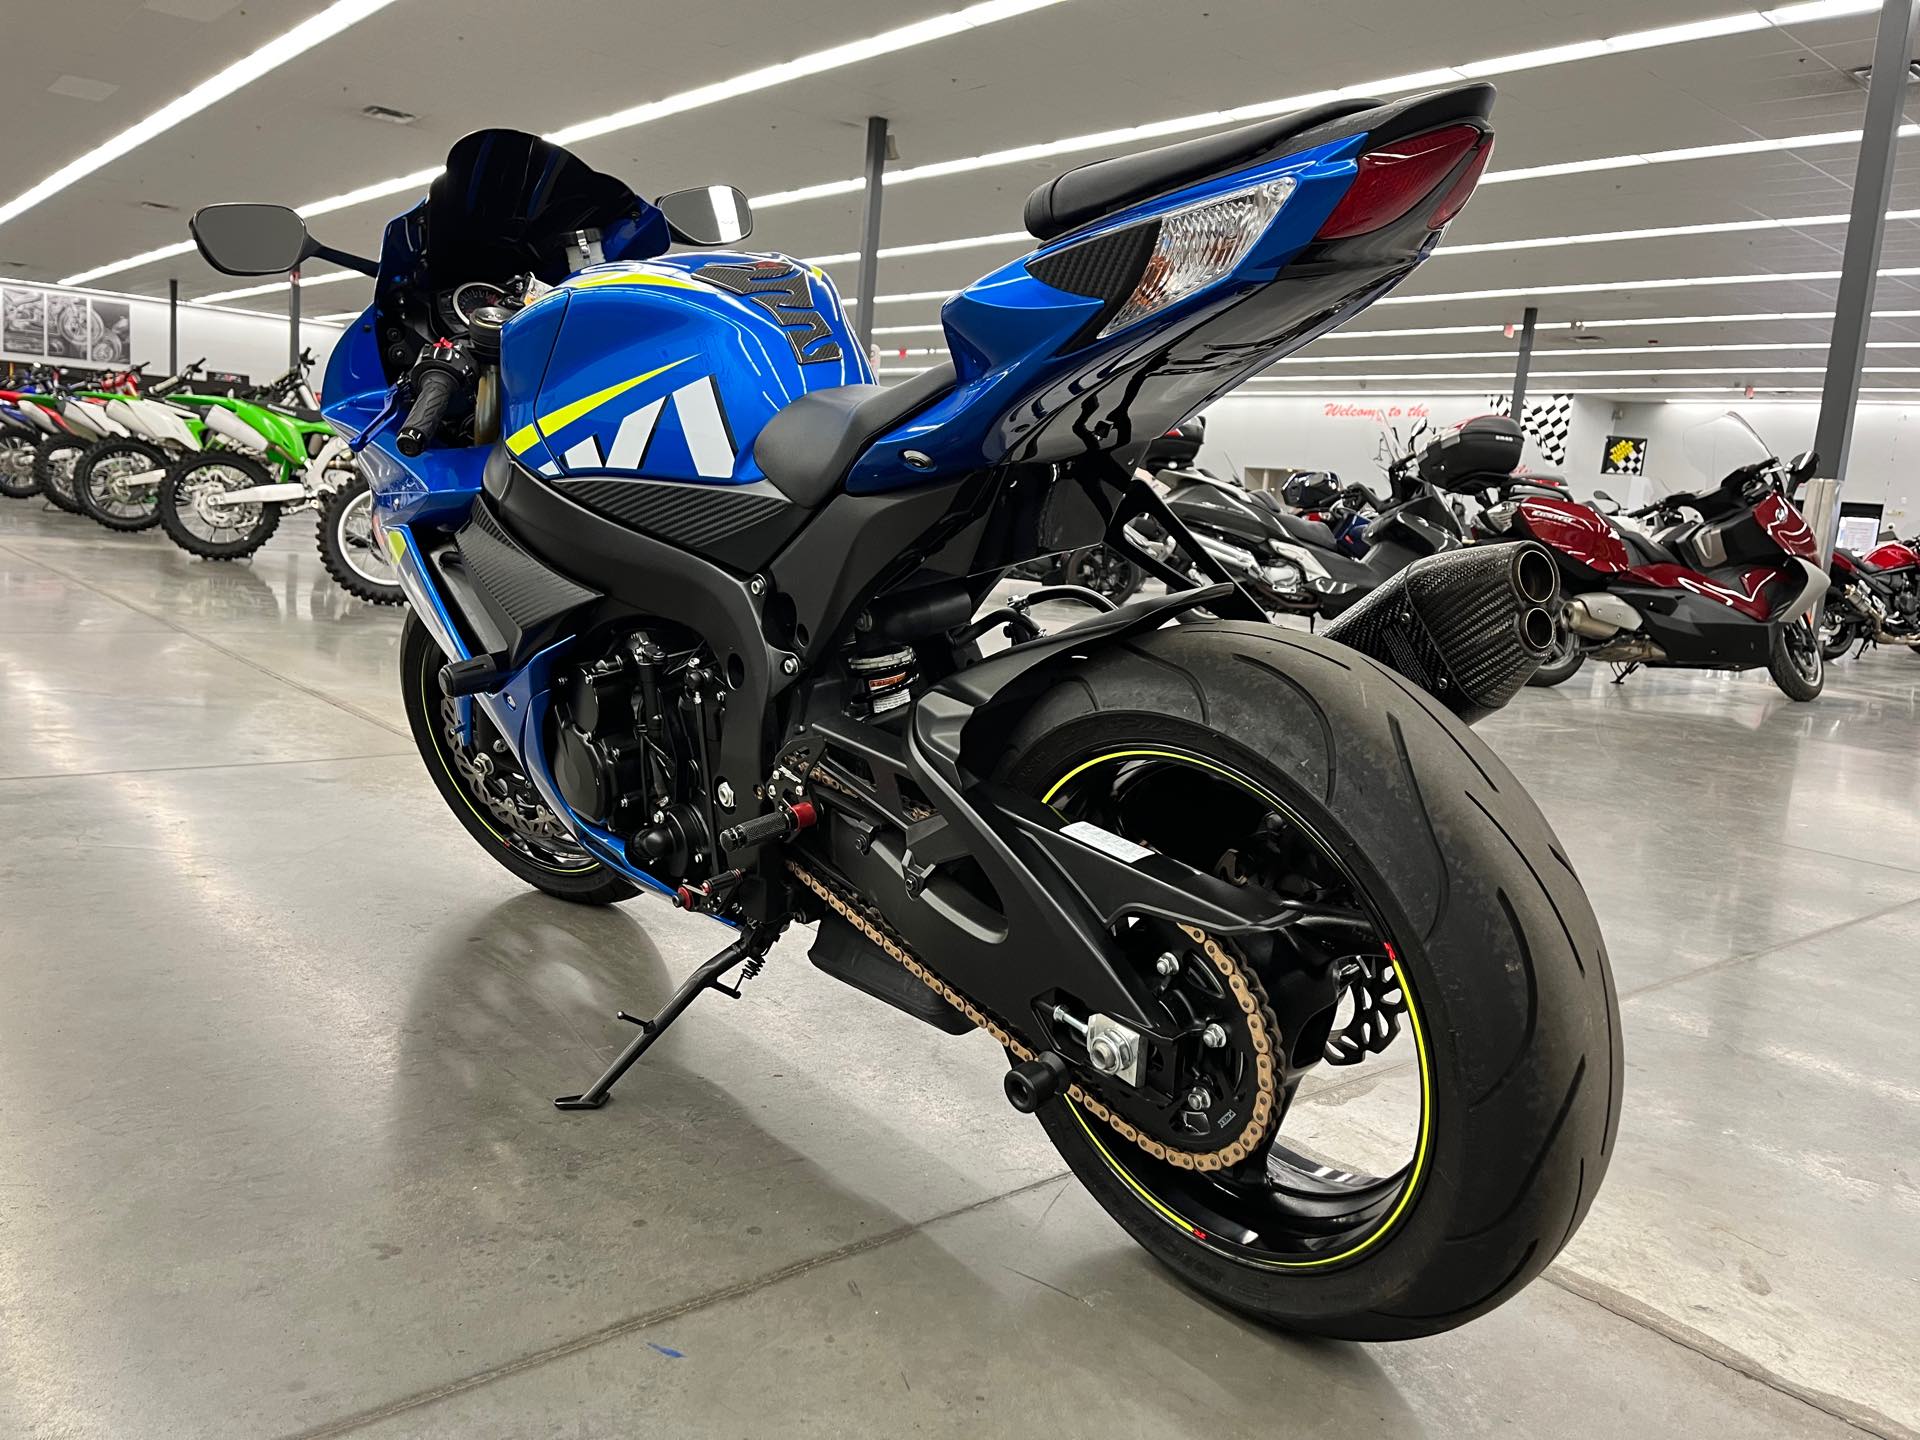 2015 Suzuki GSX-R 750 at Aces Motorcycles - Denver